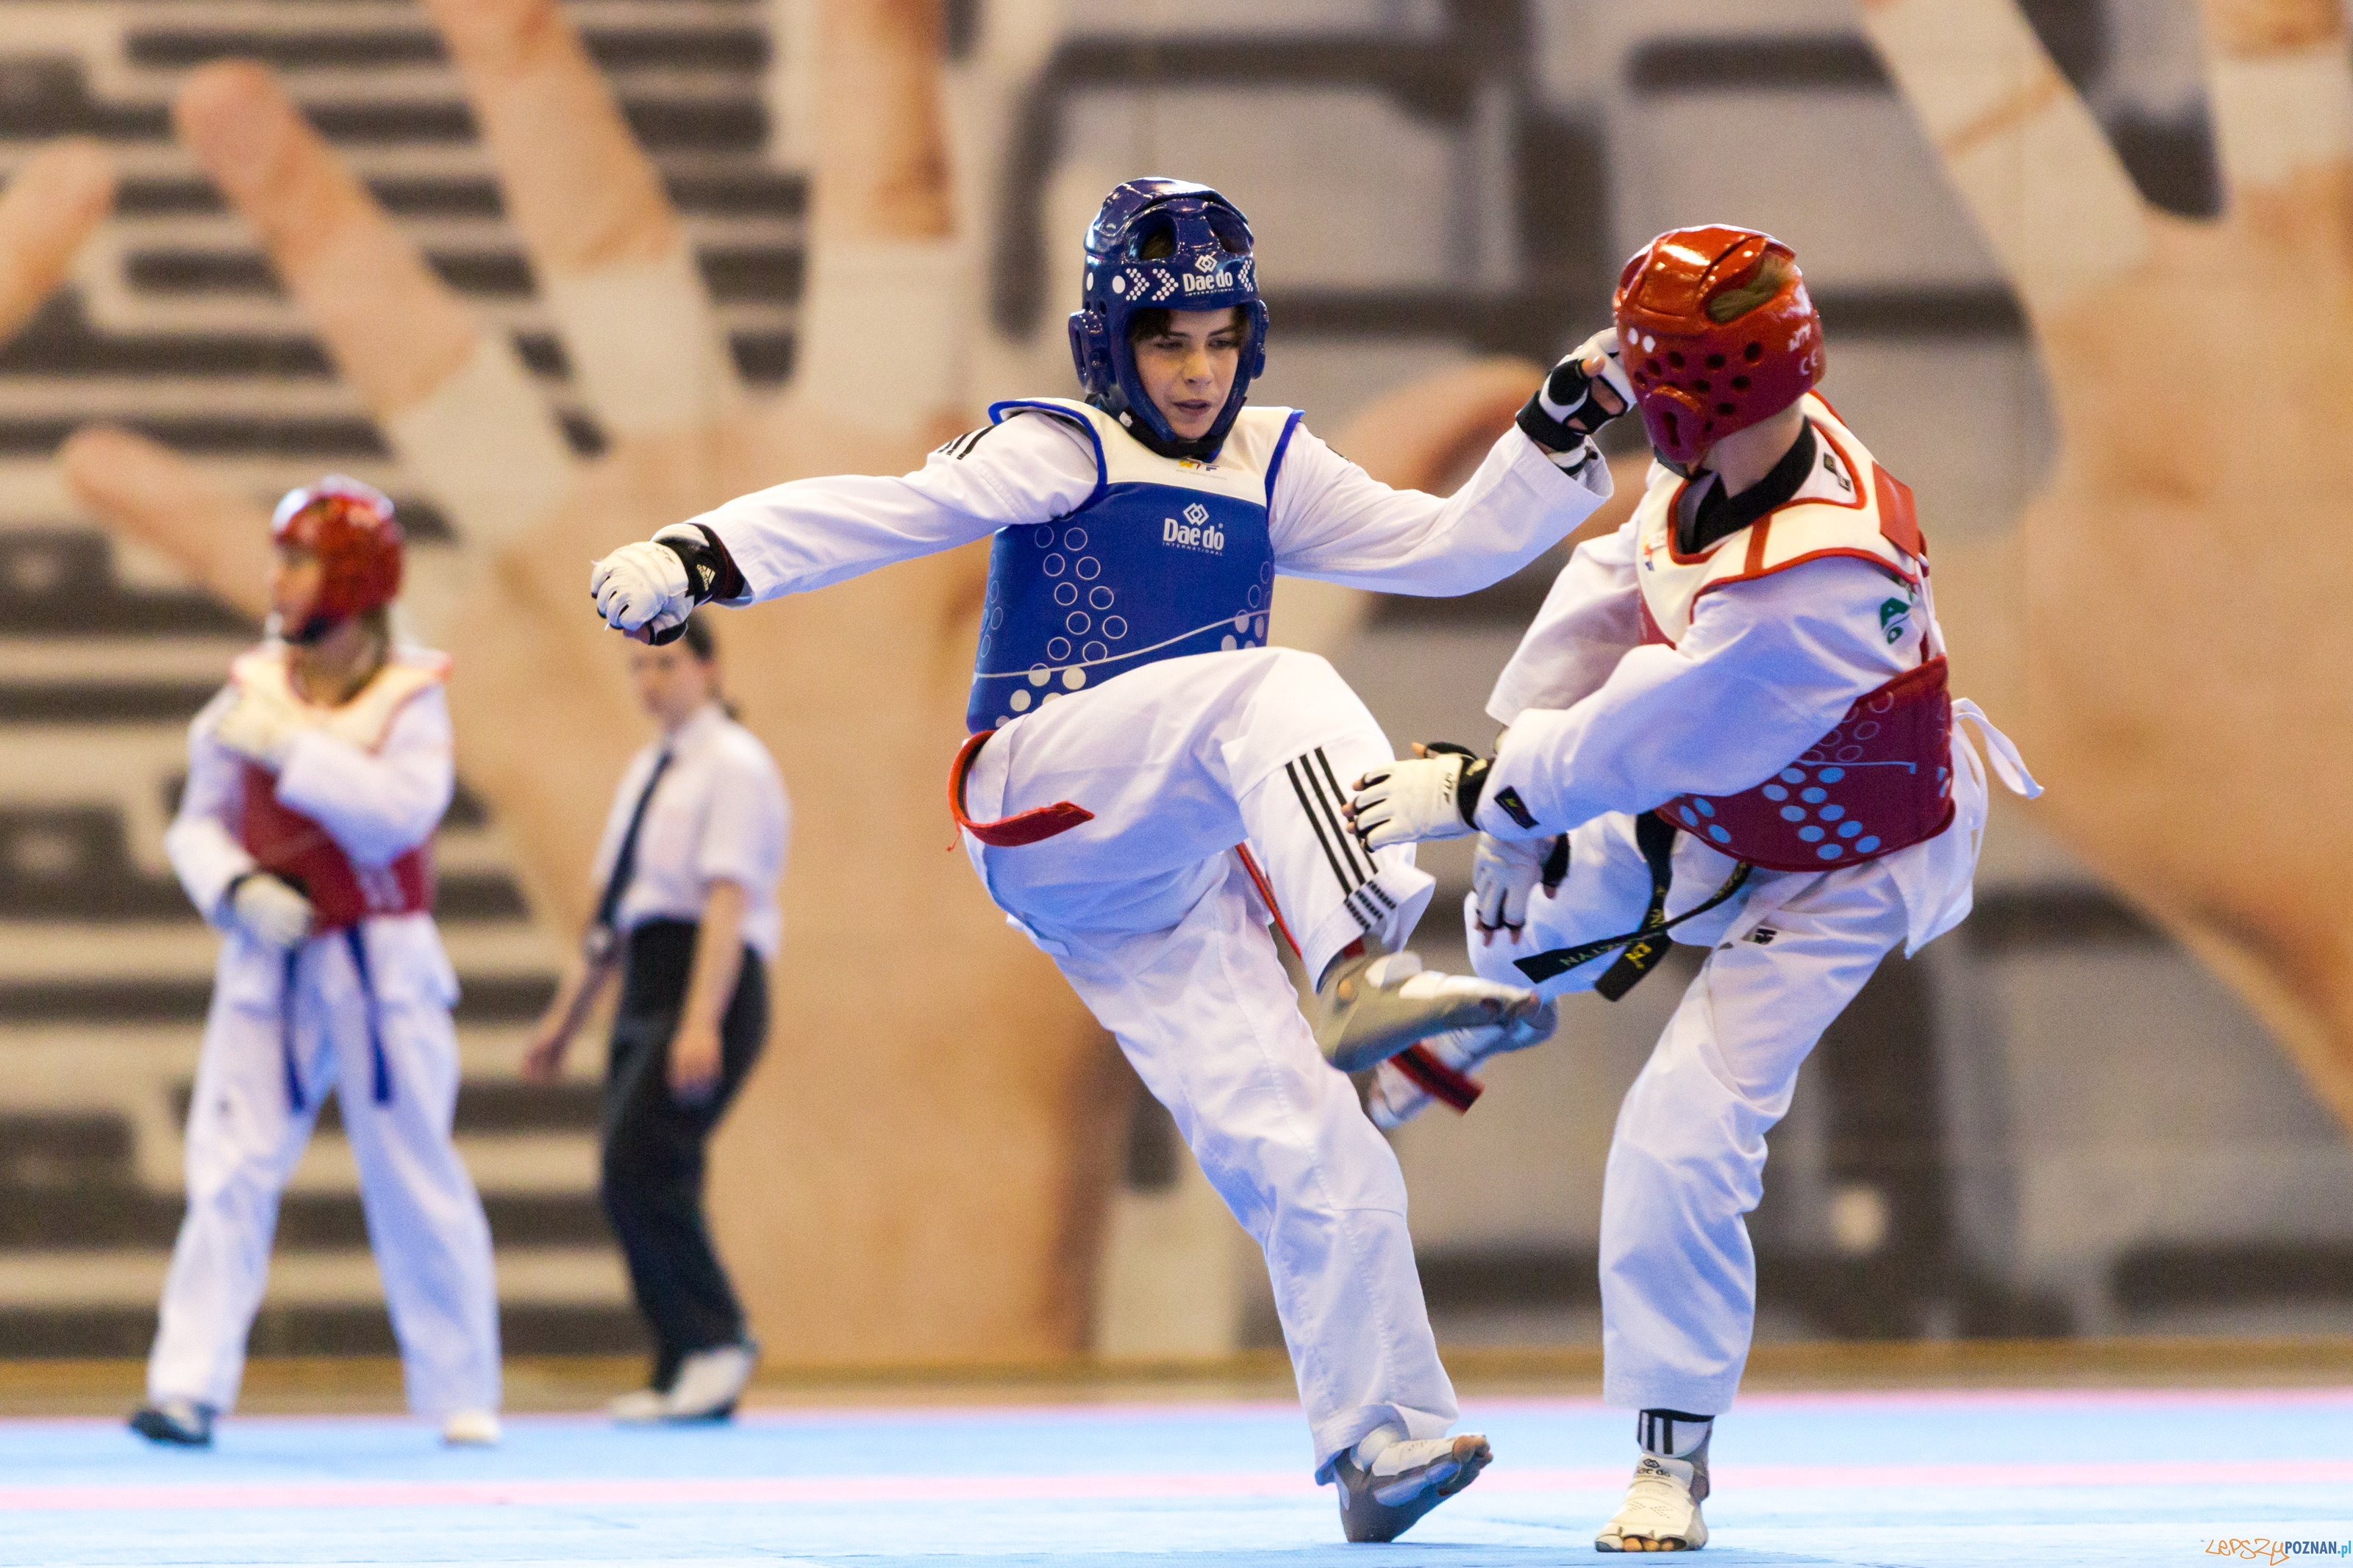 Ogólnopolskie Olimpiady Młodzieży -  Taekwondo  Foto: lepszyPOZNAN.pl/Piotr Rychter